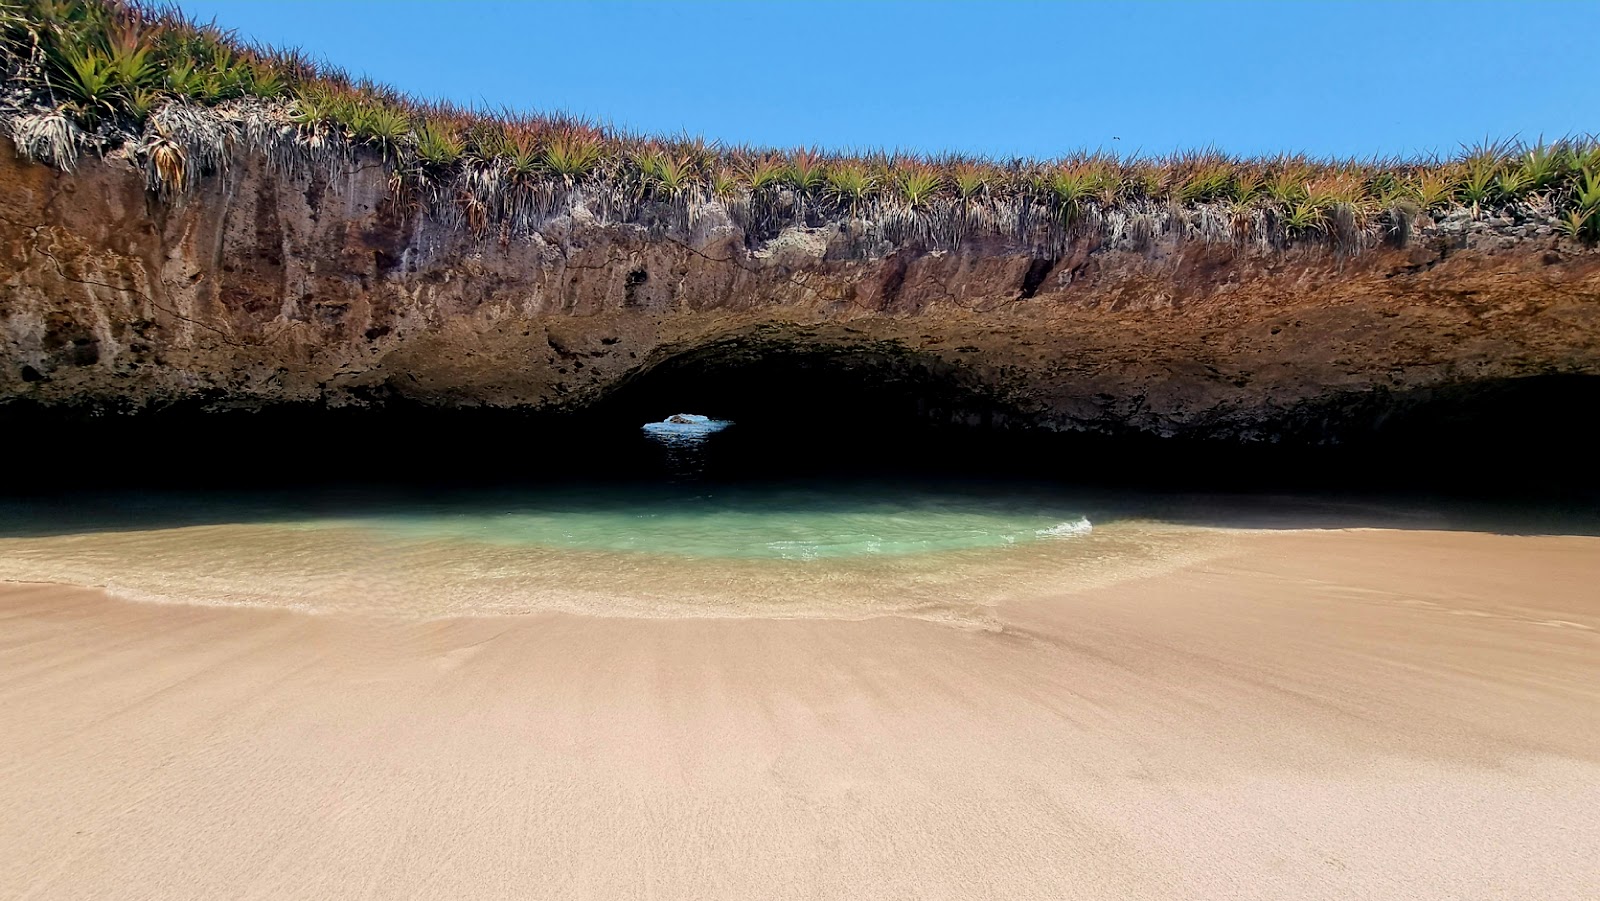 Valokuva Playa del Amor (Hidden beach)ista. sisältäen suora ranta